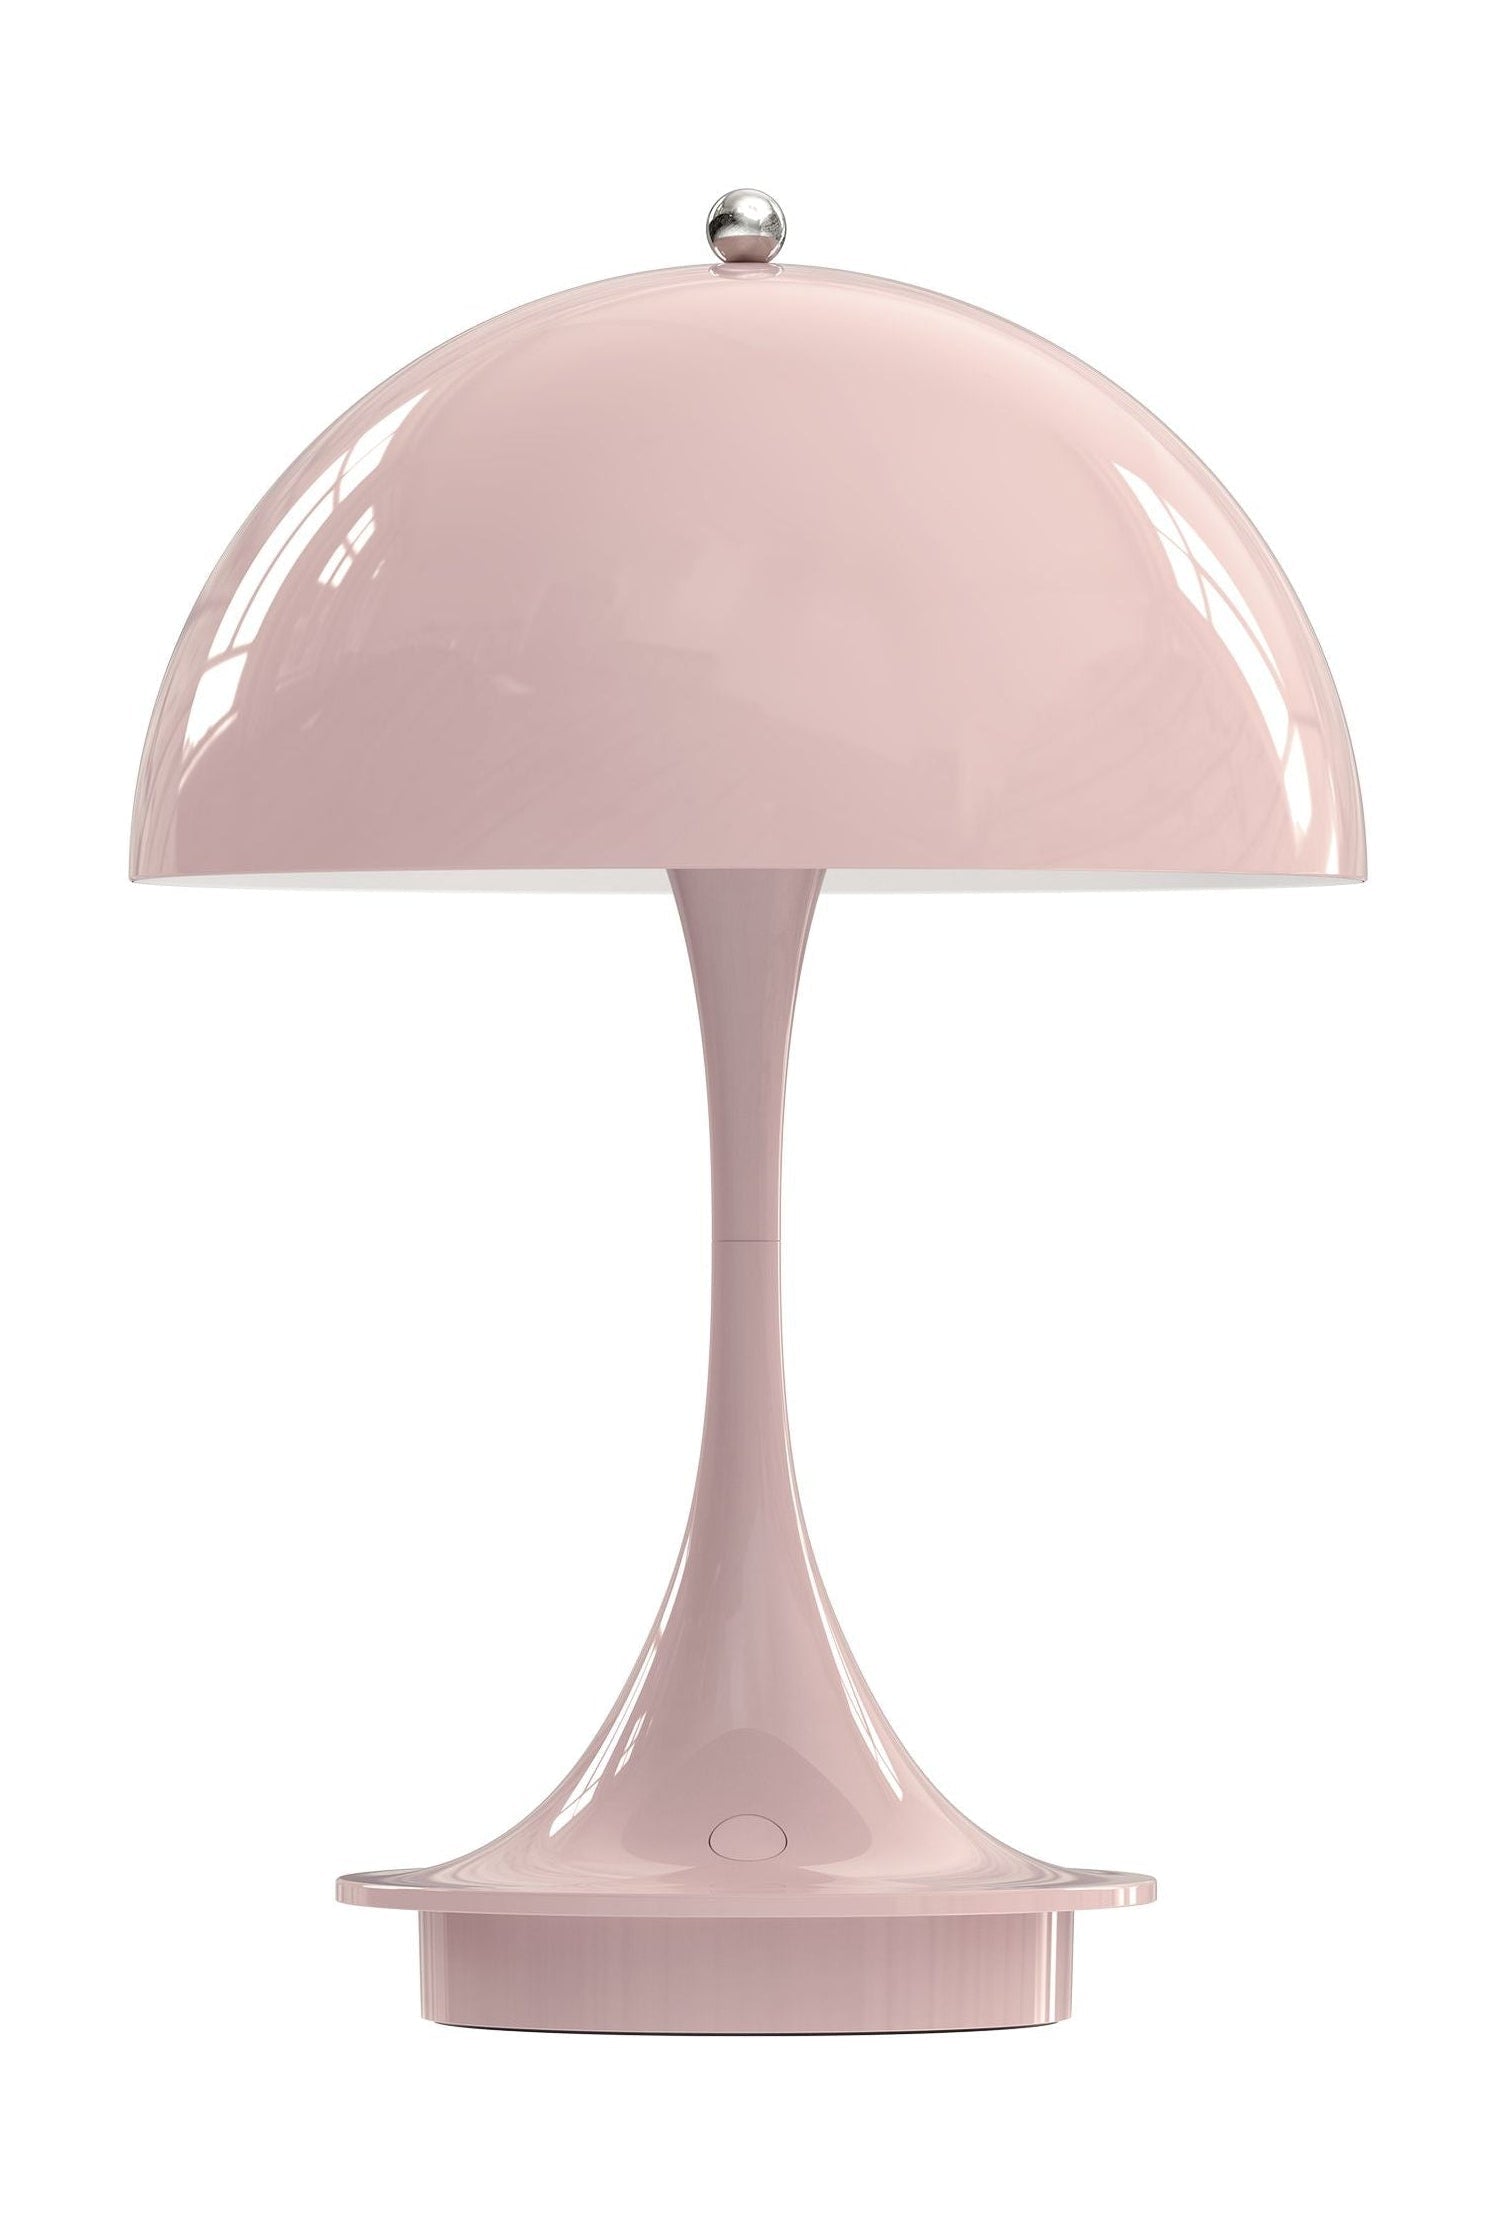 Louis Poulsen Panthella 160 lampe de table portable LED 27 K V2, rose pâle